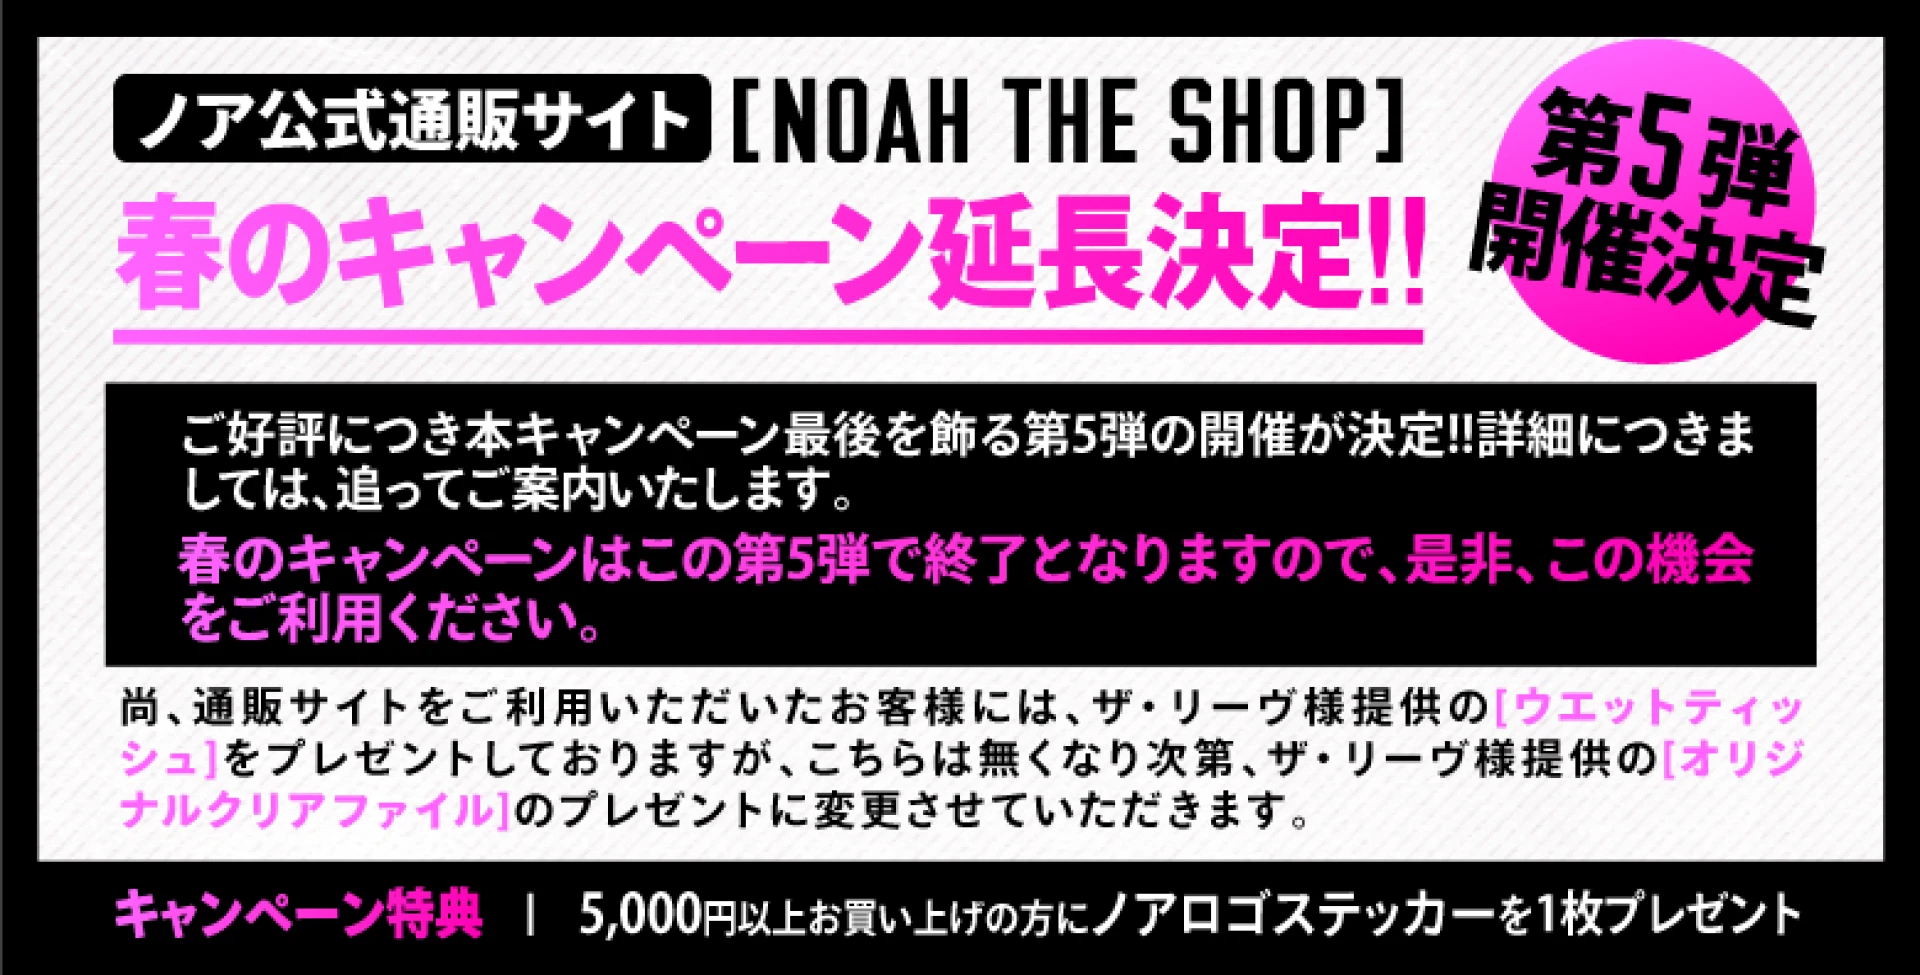 【第5弾が決定!!】ノア公式通販サイトNOAH THE SHOP 春のキャンペーン延長決定